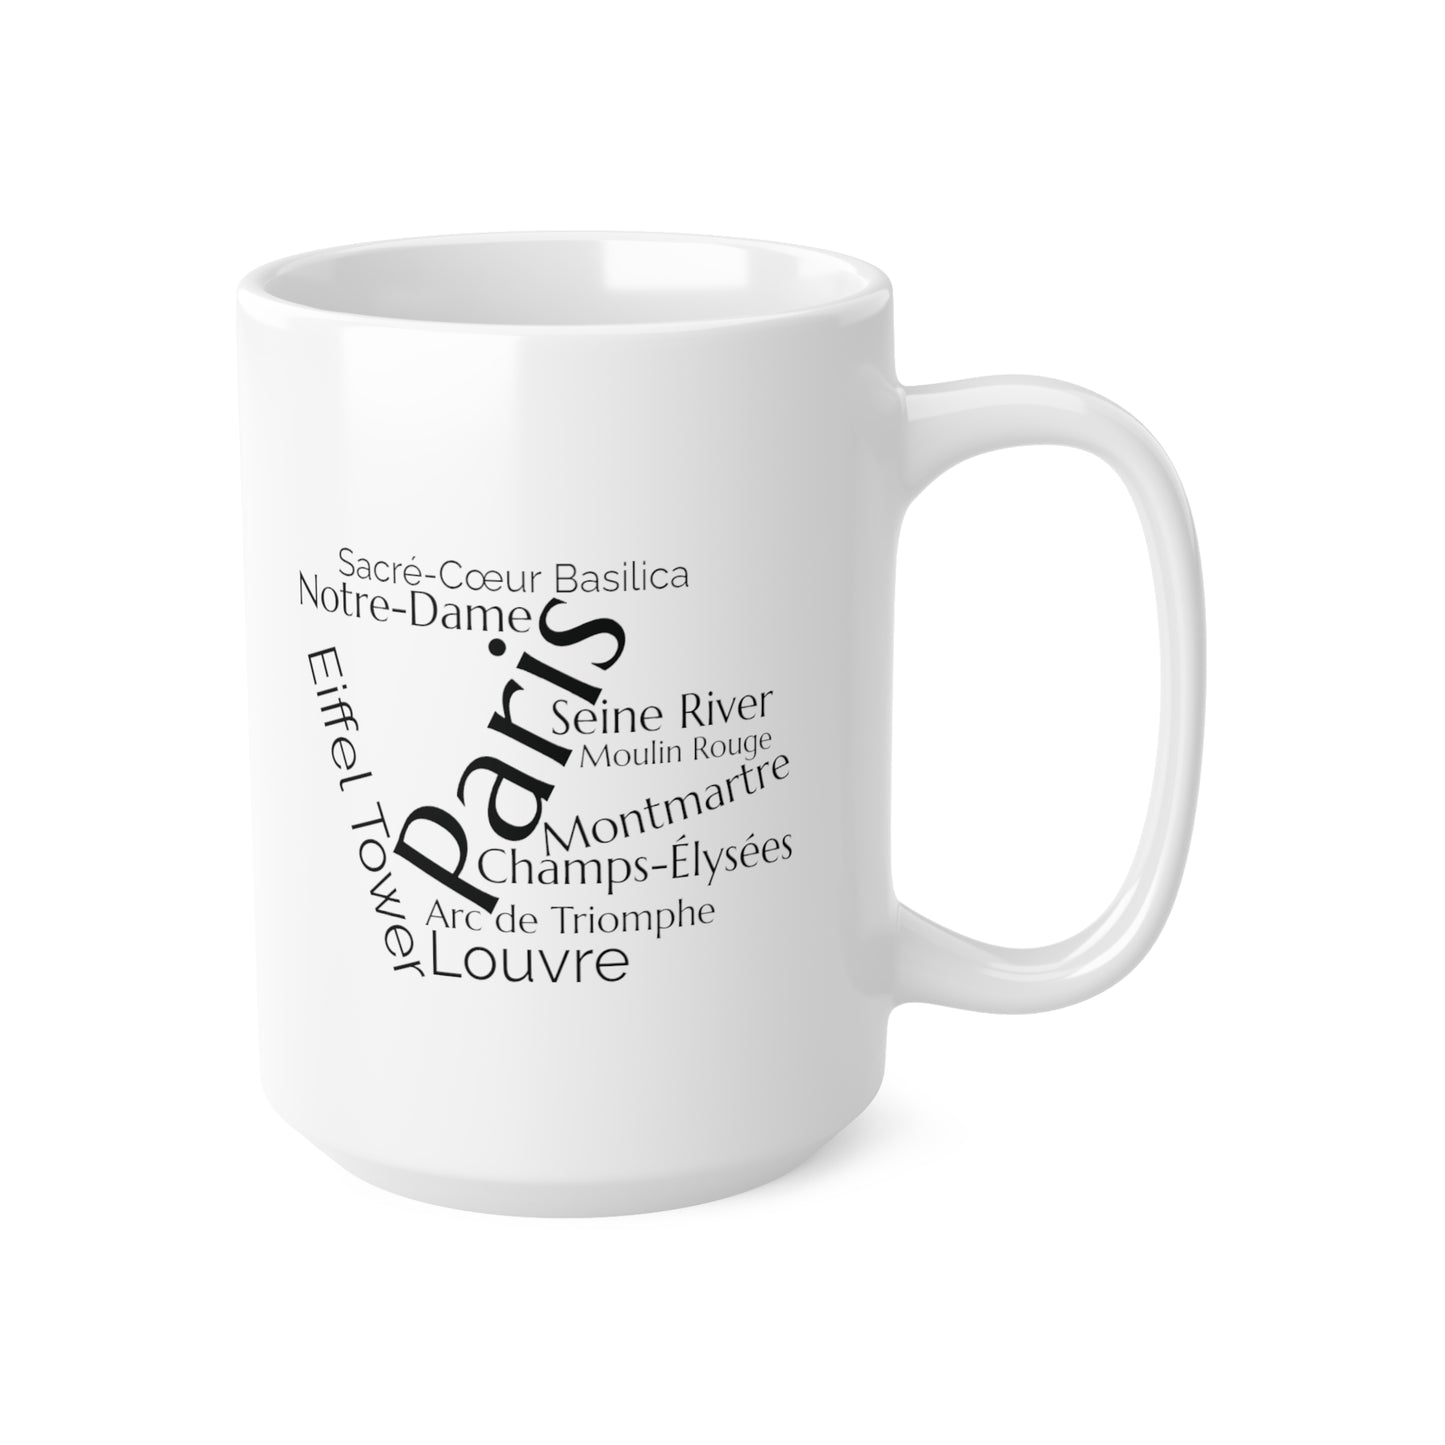 Paris word mug, local mug, geography mug, gift, mug, coffee cup, word mug, wordcloud mug, christmas gift, birthday gift